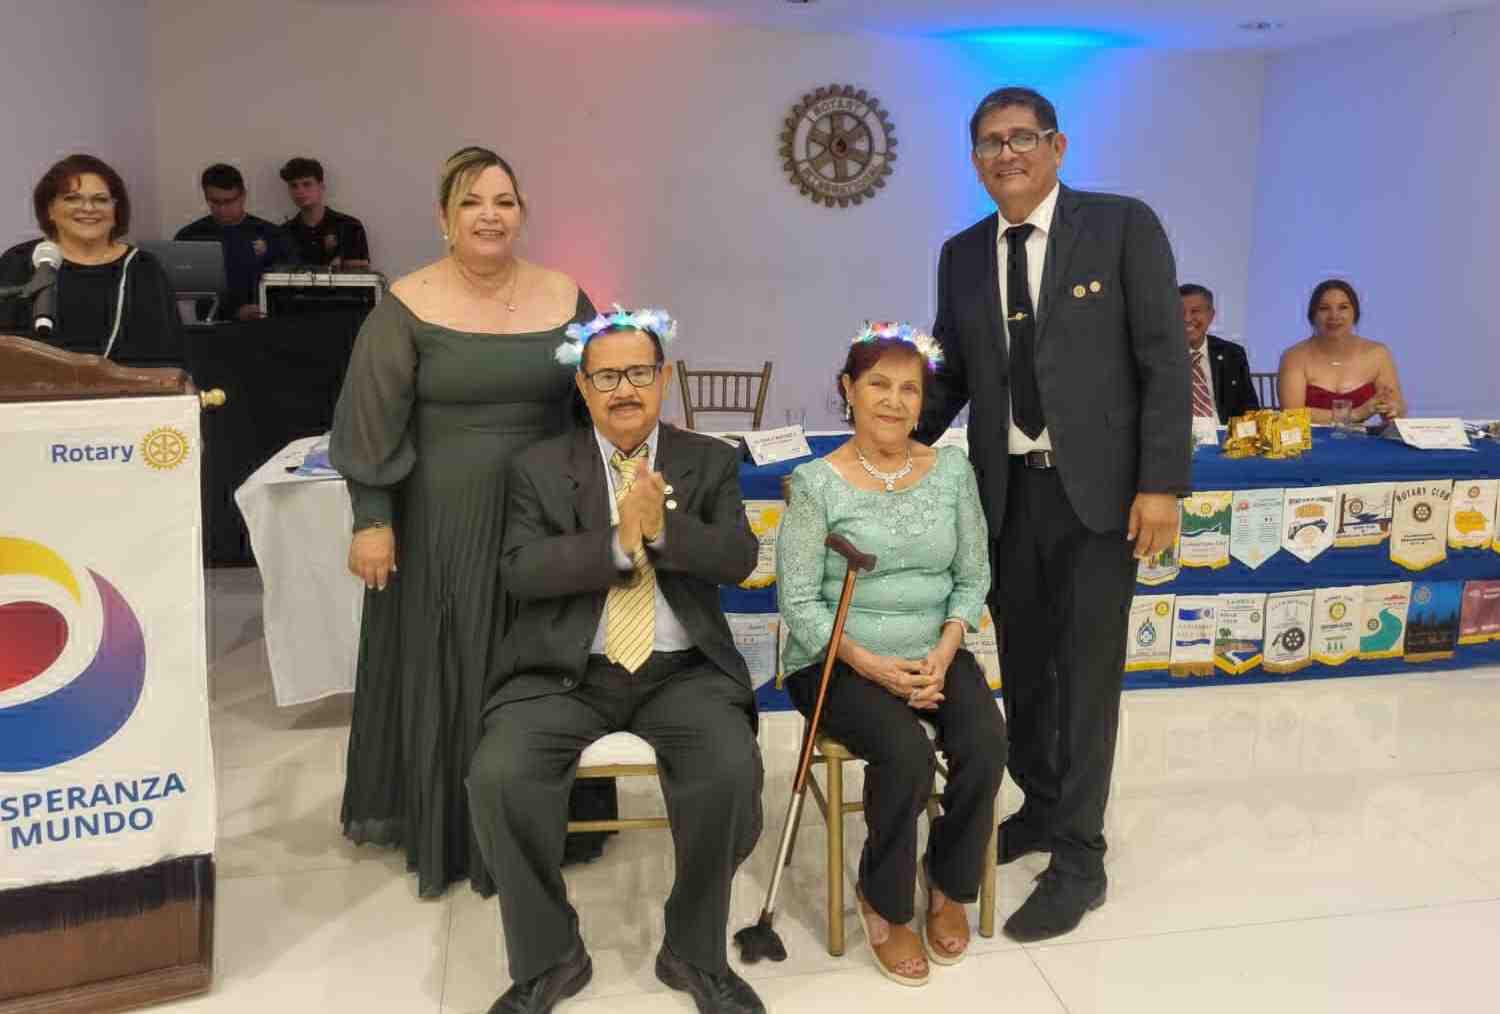 $!José Arturo Zamudio Sánchez y su esposa Norma Alicia Garzón, coronaron como reyes a los socios fundadores Vicente Bañuelos y Olivia de Bañuelos.